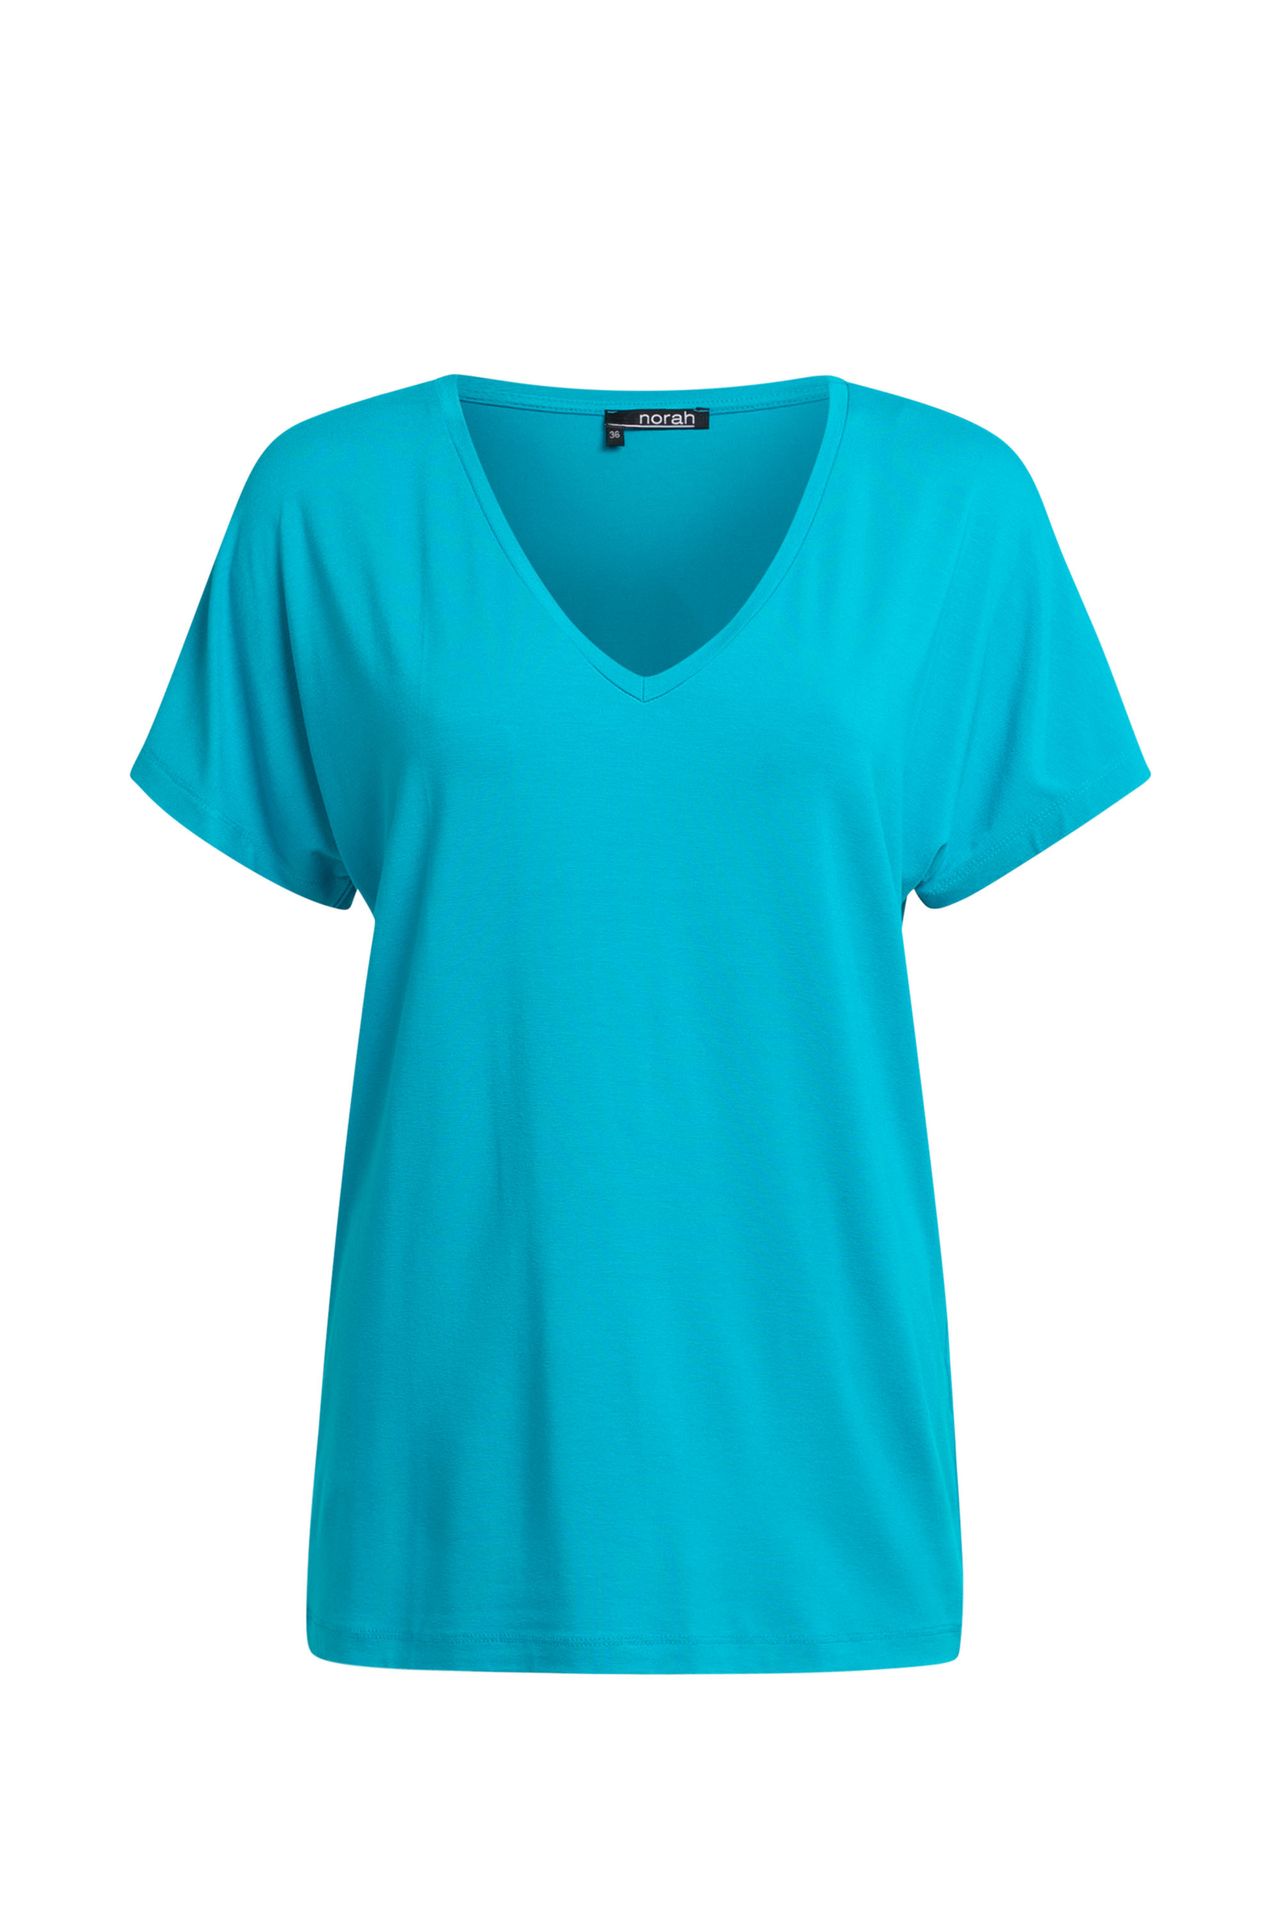 Norah Shirt Maral aqua aqua 208968-476